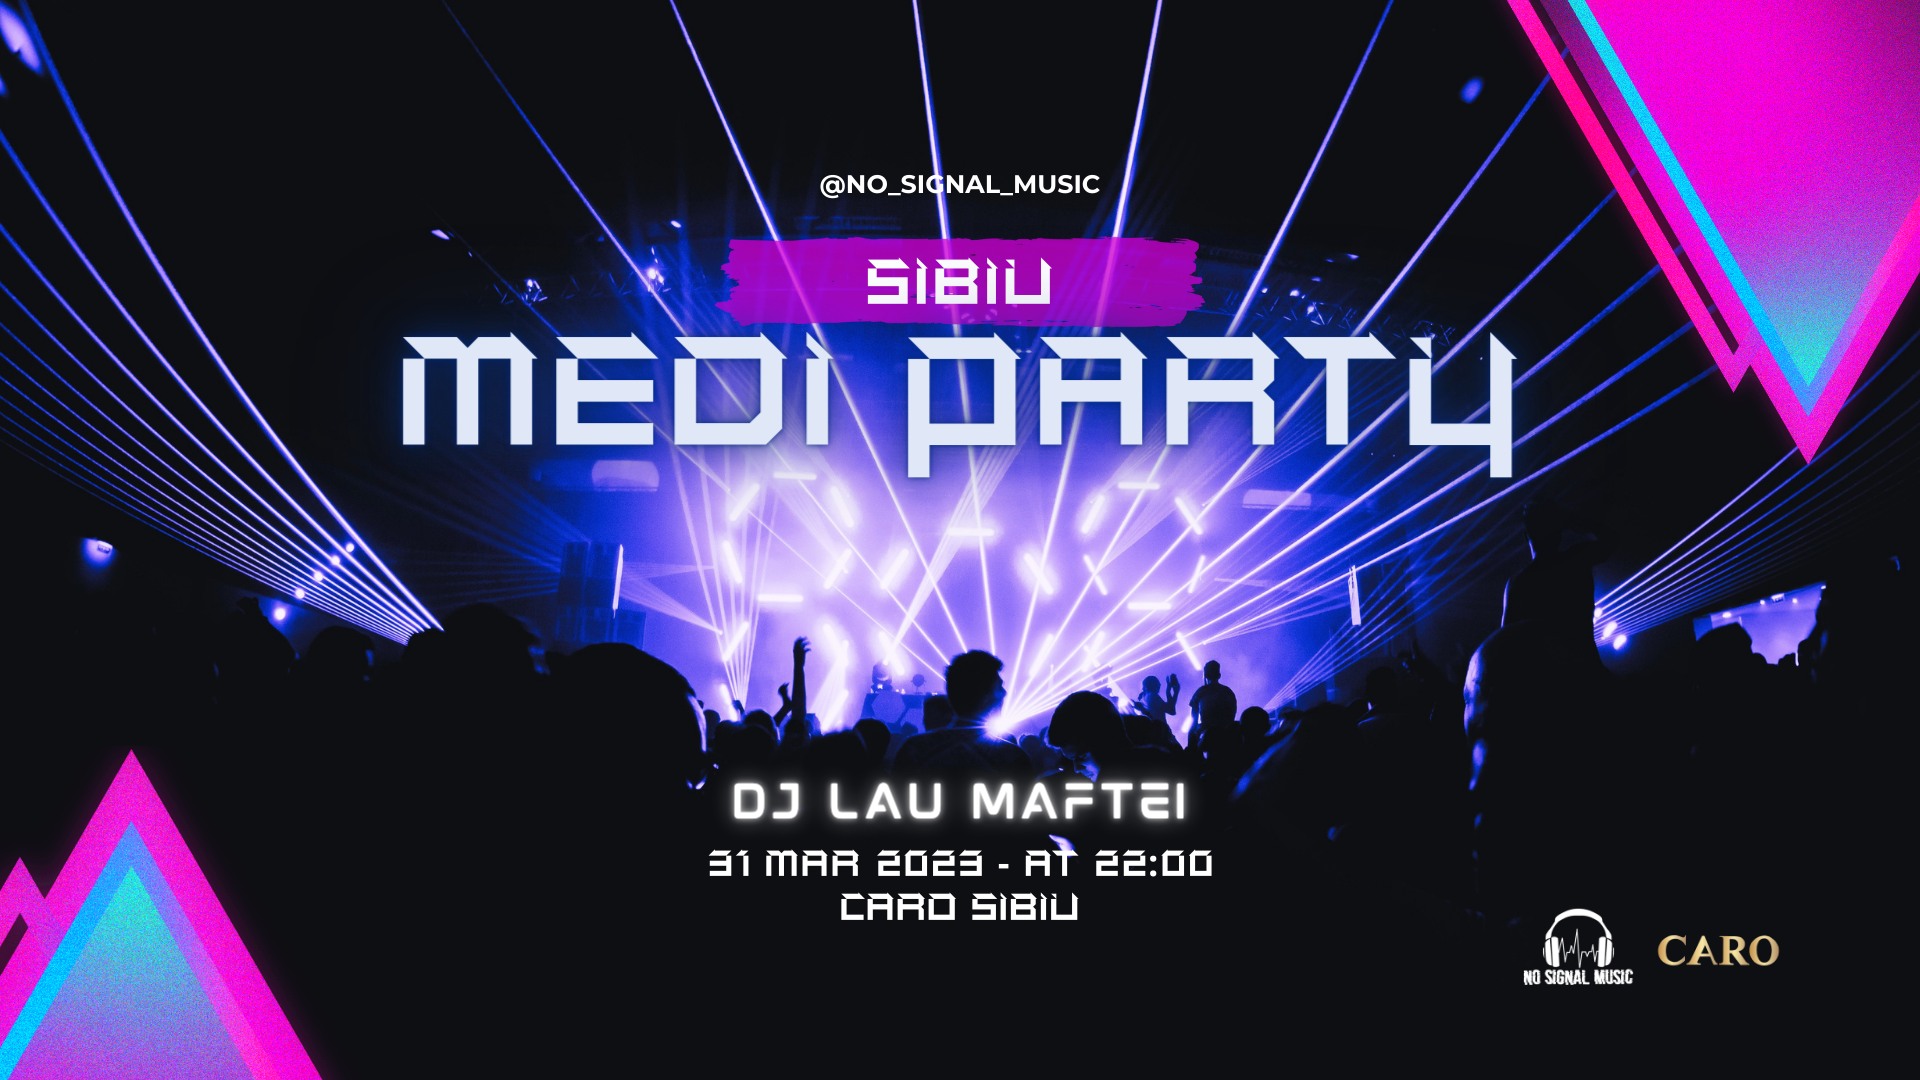 MediParty Sibiu @Caro with Lau Maftei